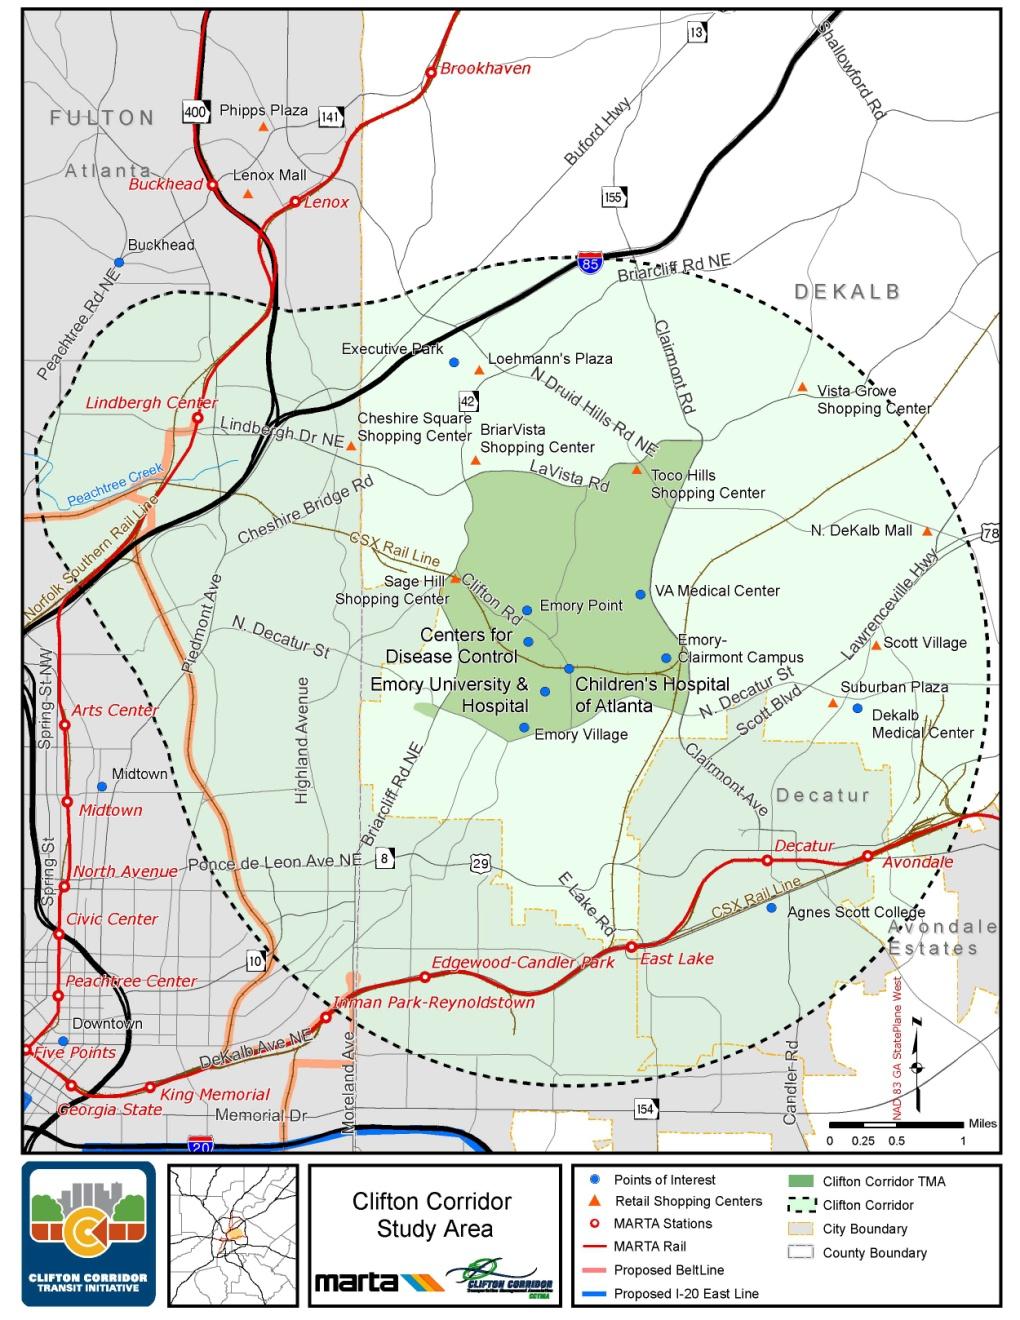 TIA-028: Clifton Corridor Clifton Corridor $700 million Construction of a fixed guideway from